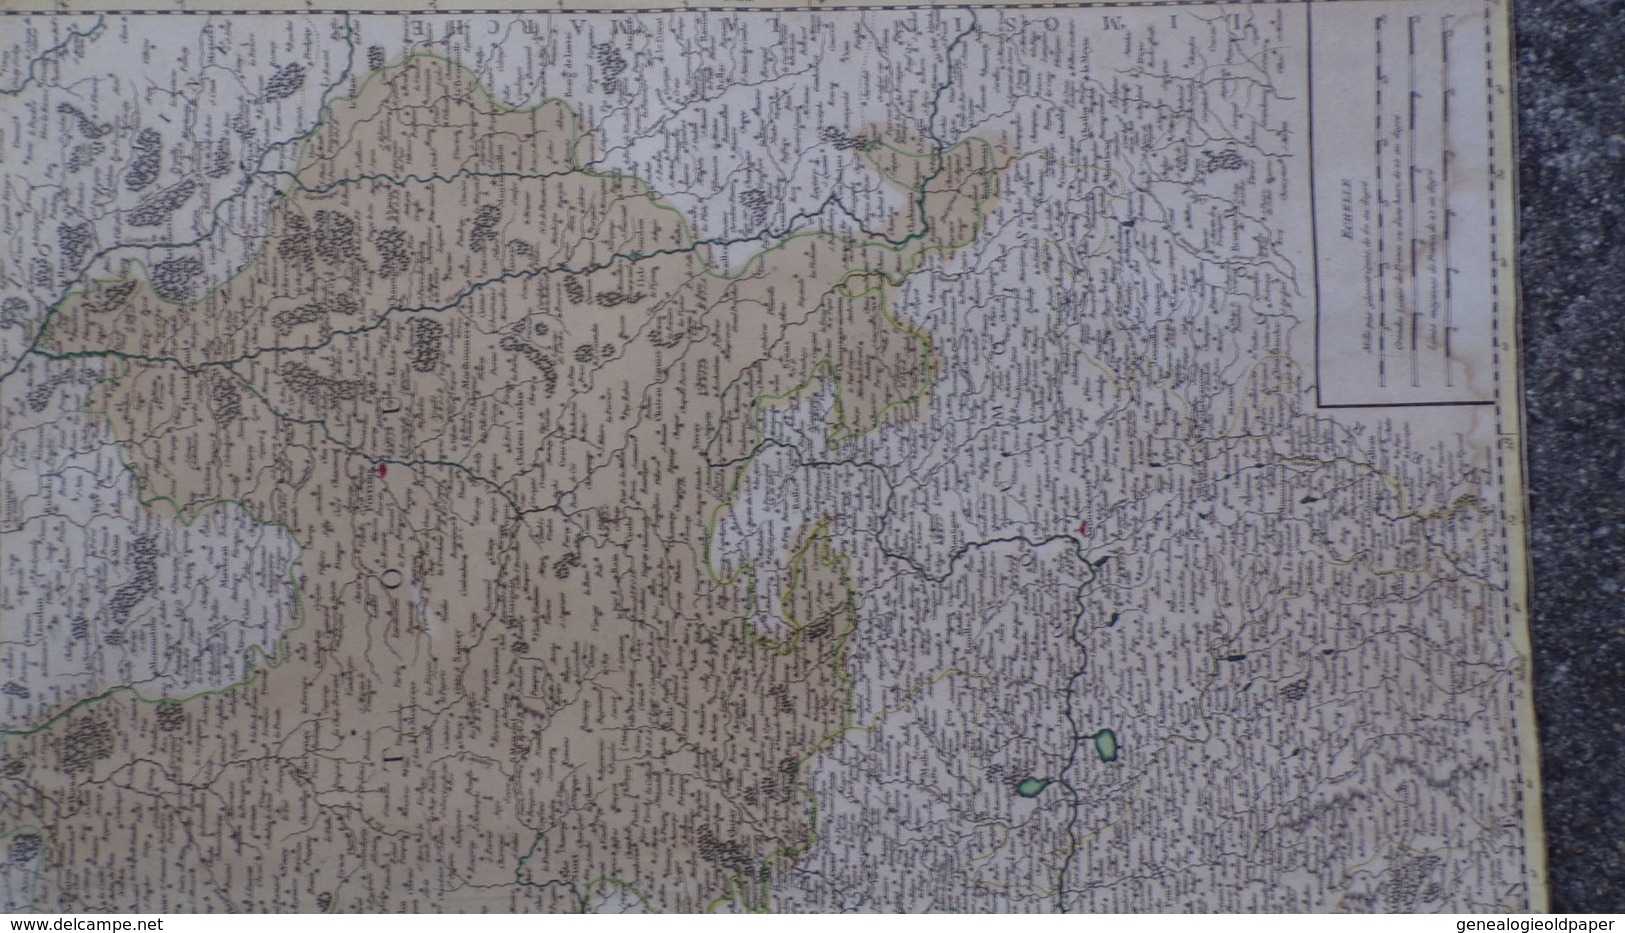 17-16-33-85-87-RARE CARTE GOUVERNEMENT GENERAUX DU POITOU- AUNIS-SAINTONGE-ANGOUMOIS-VAUGONDY 1753-ROYAN-ILE RE-OLERON- - Cartes Géographiques